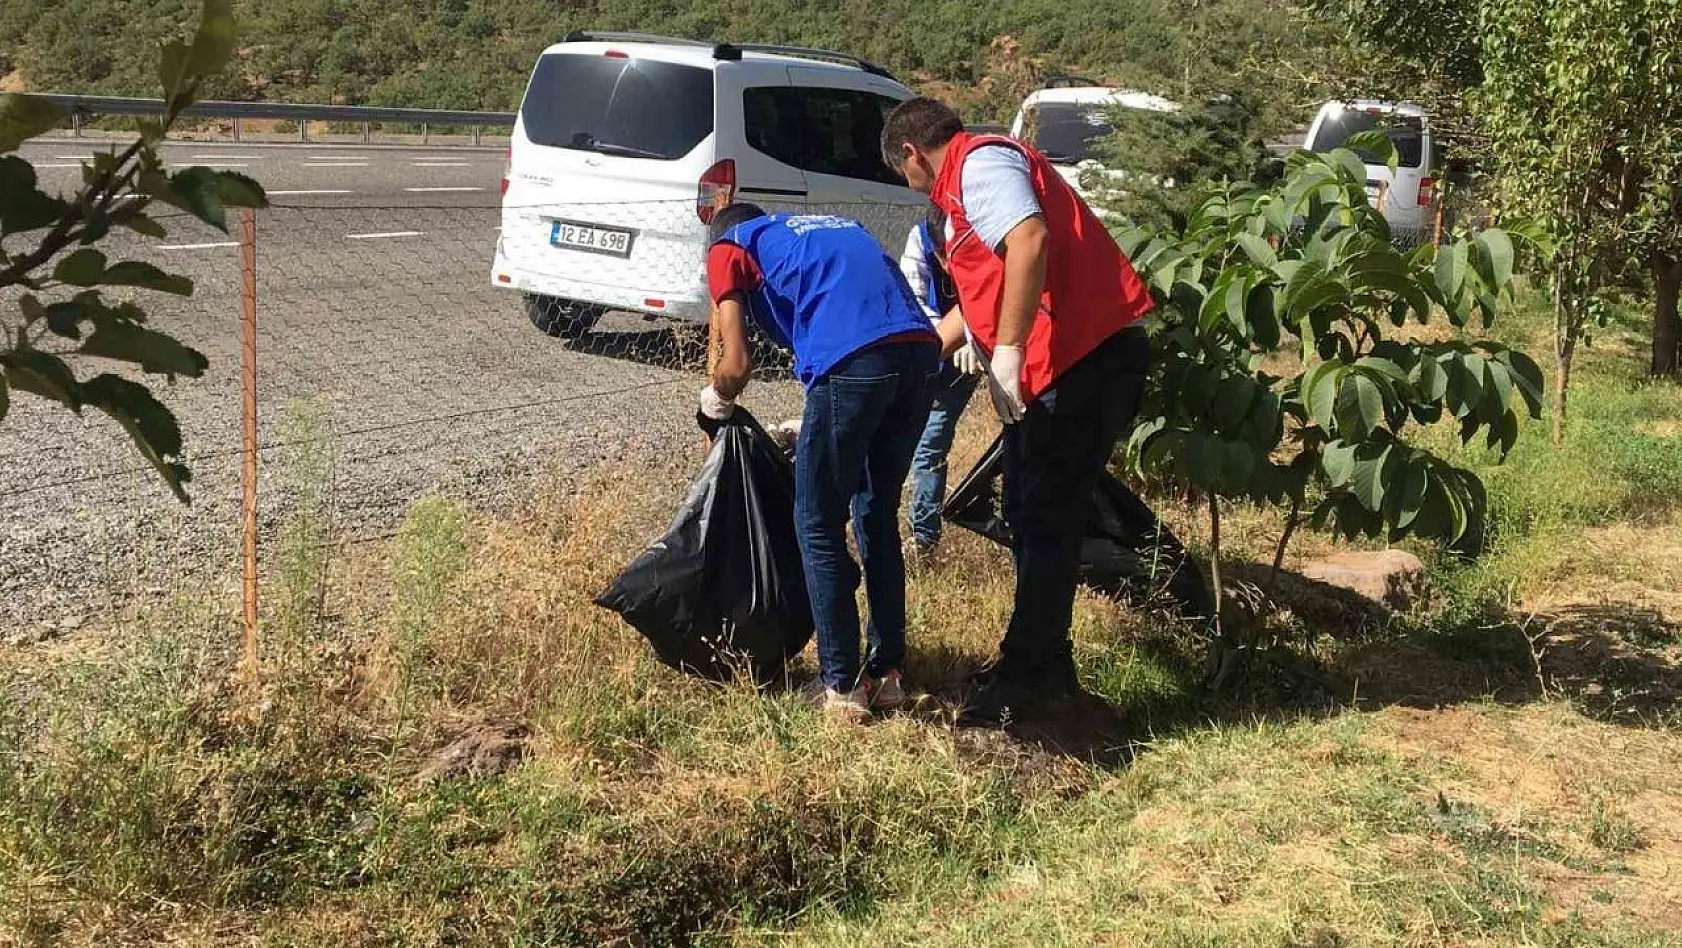 Solhan'da gönüllü gençler  çevre temizliği yaptı